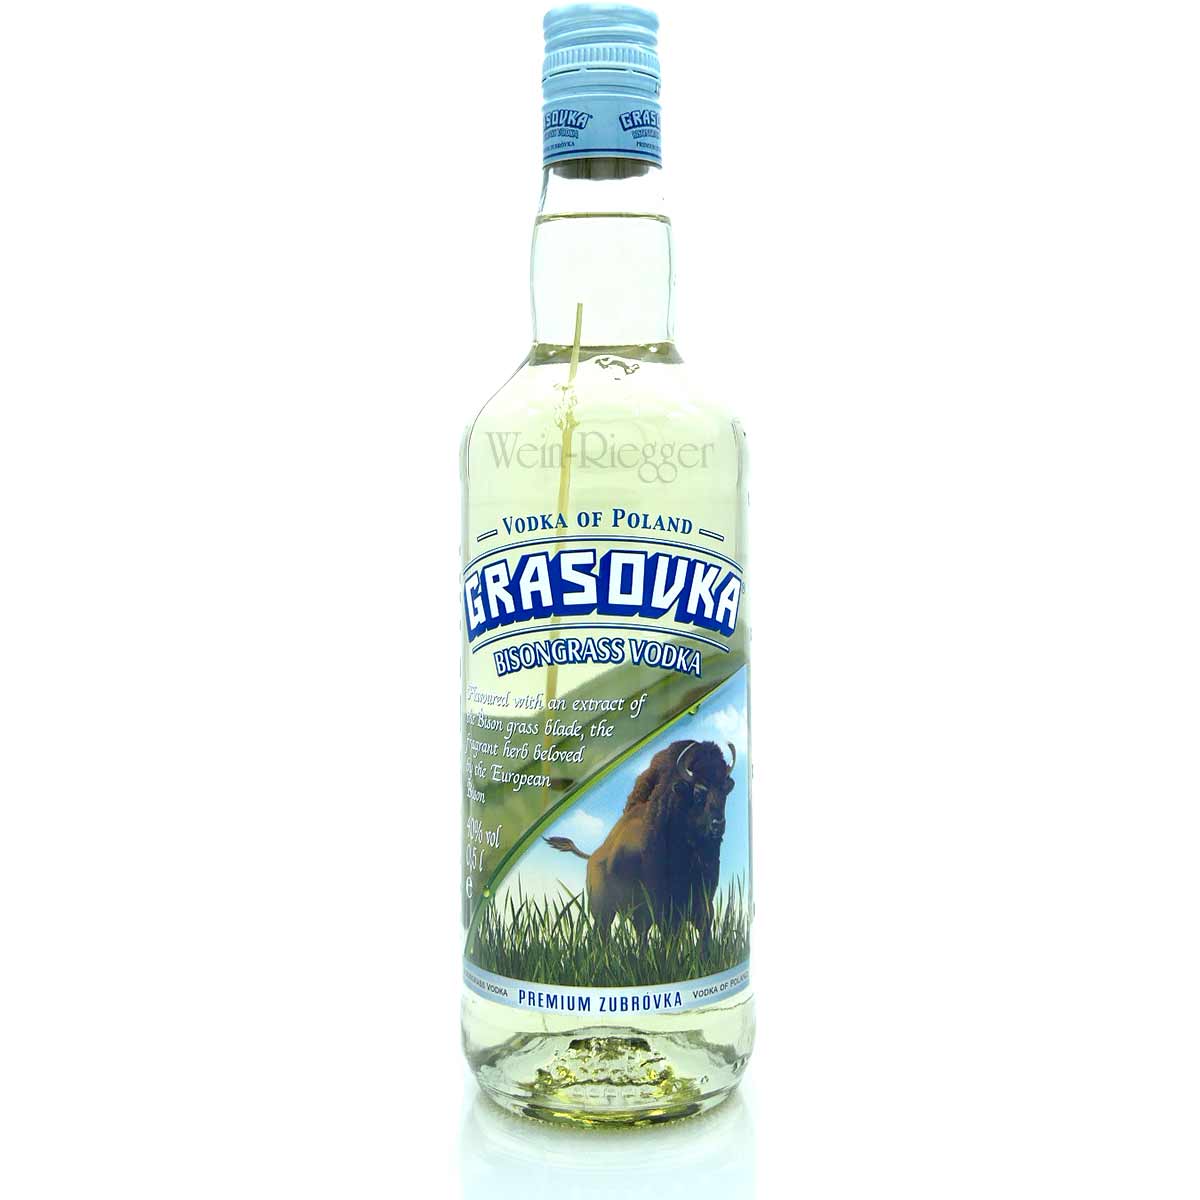 Grasovka Bisongrass - Vodka of Poland 0,5 l